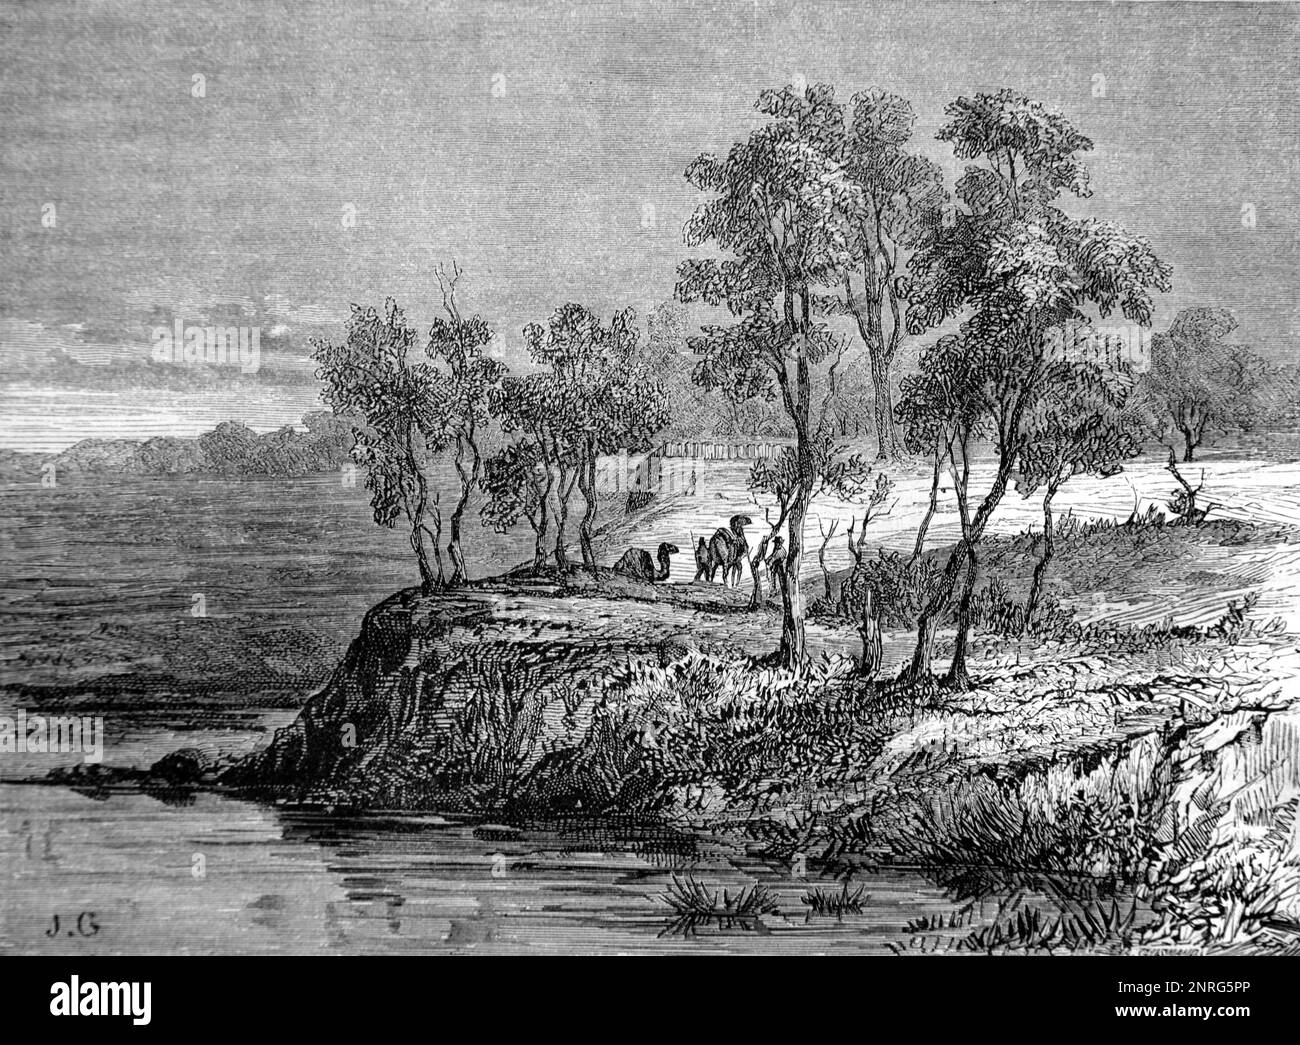 Cooper Creek, anciennement Cooper's Creek, a River dans le Queensland et en Australie méridionale et site de la mort de Burke et Willis en 1861, Australie. Gravure ancienne ou illustration 1862 Banque D'Images